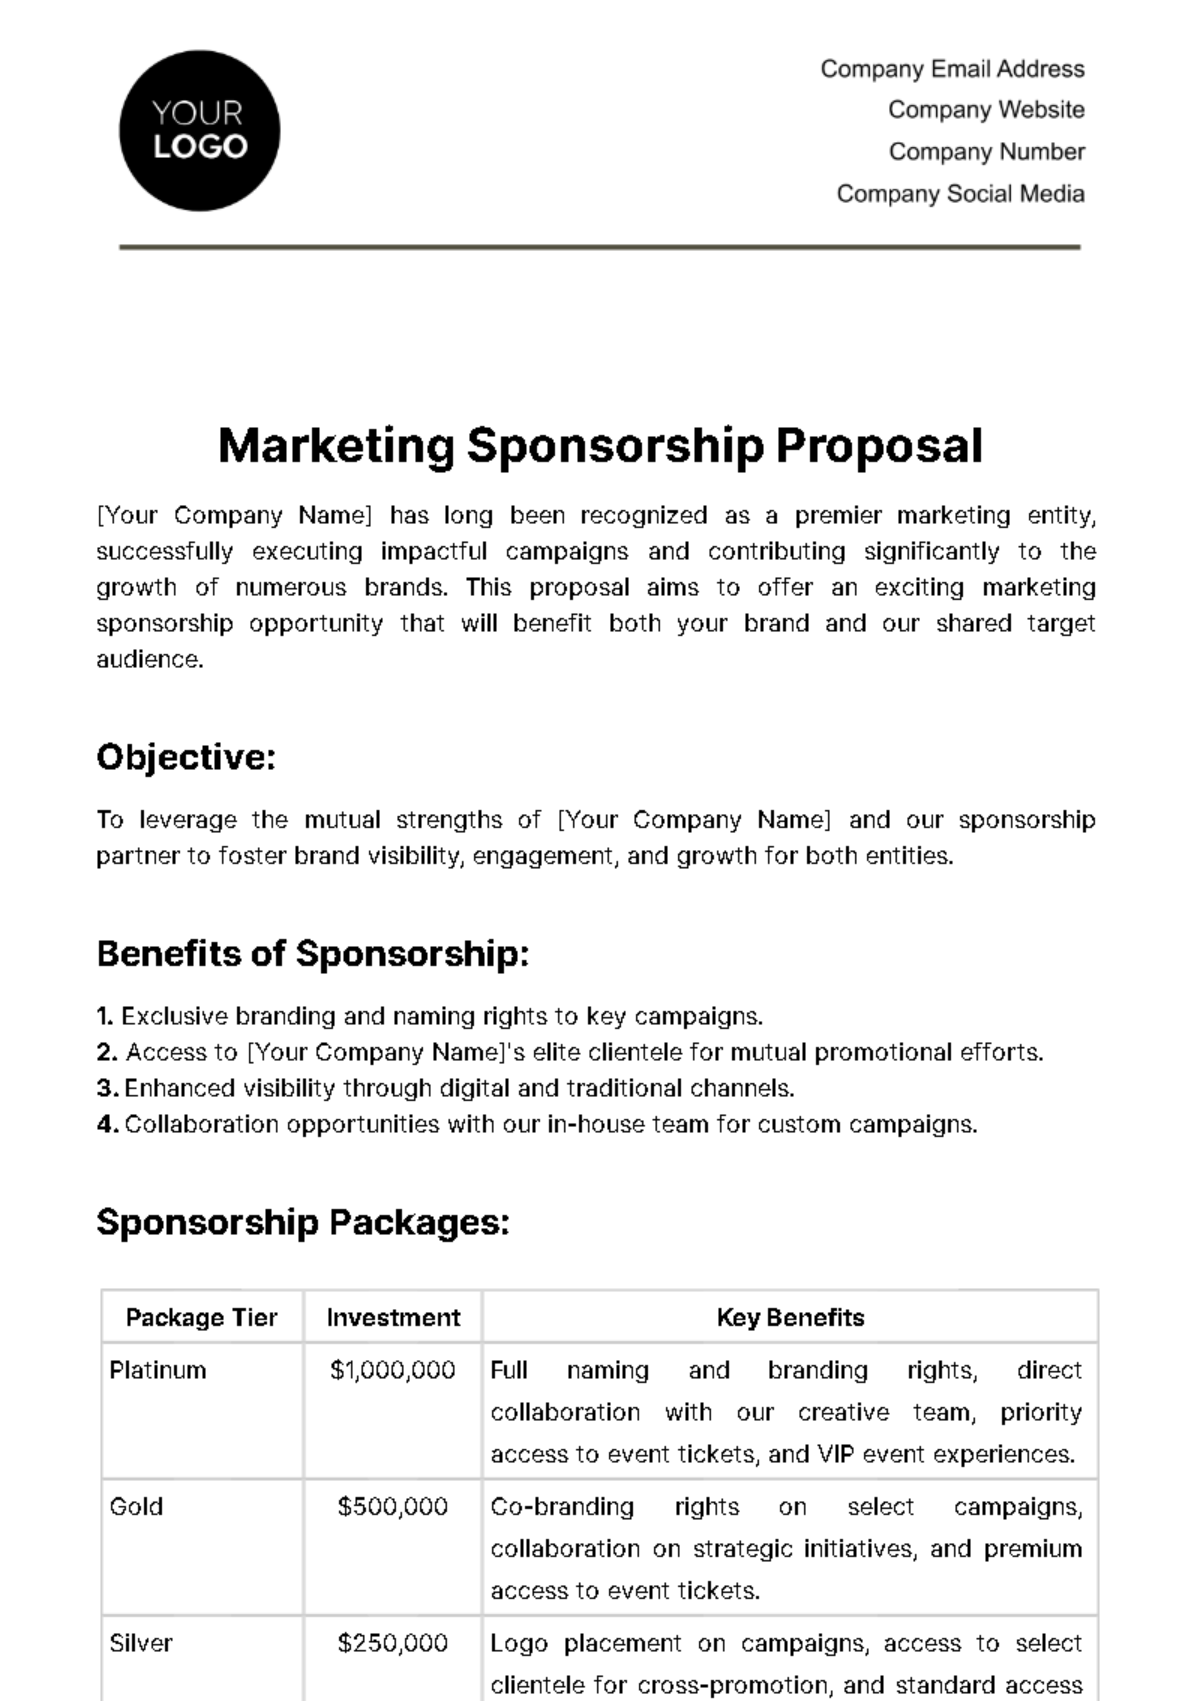 Free Marketing Sponsorship Proposal Template